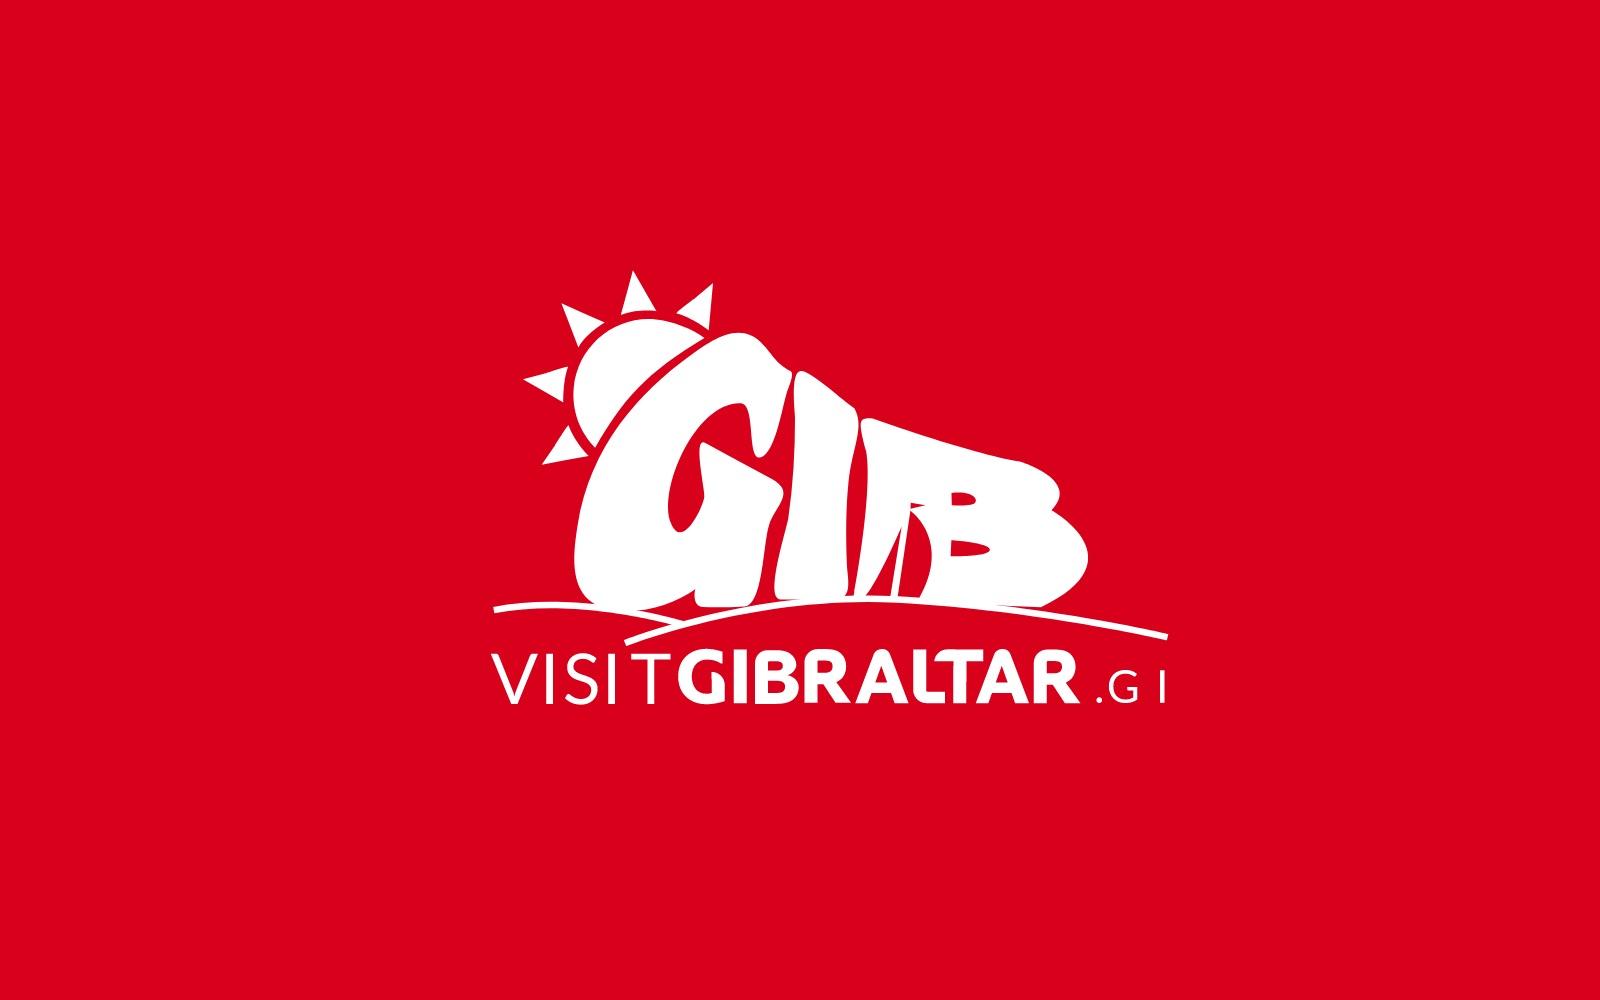 Visit Gibraltar Image